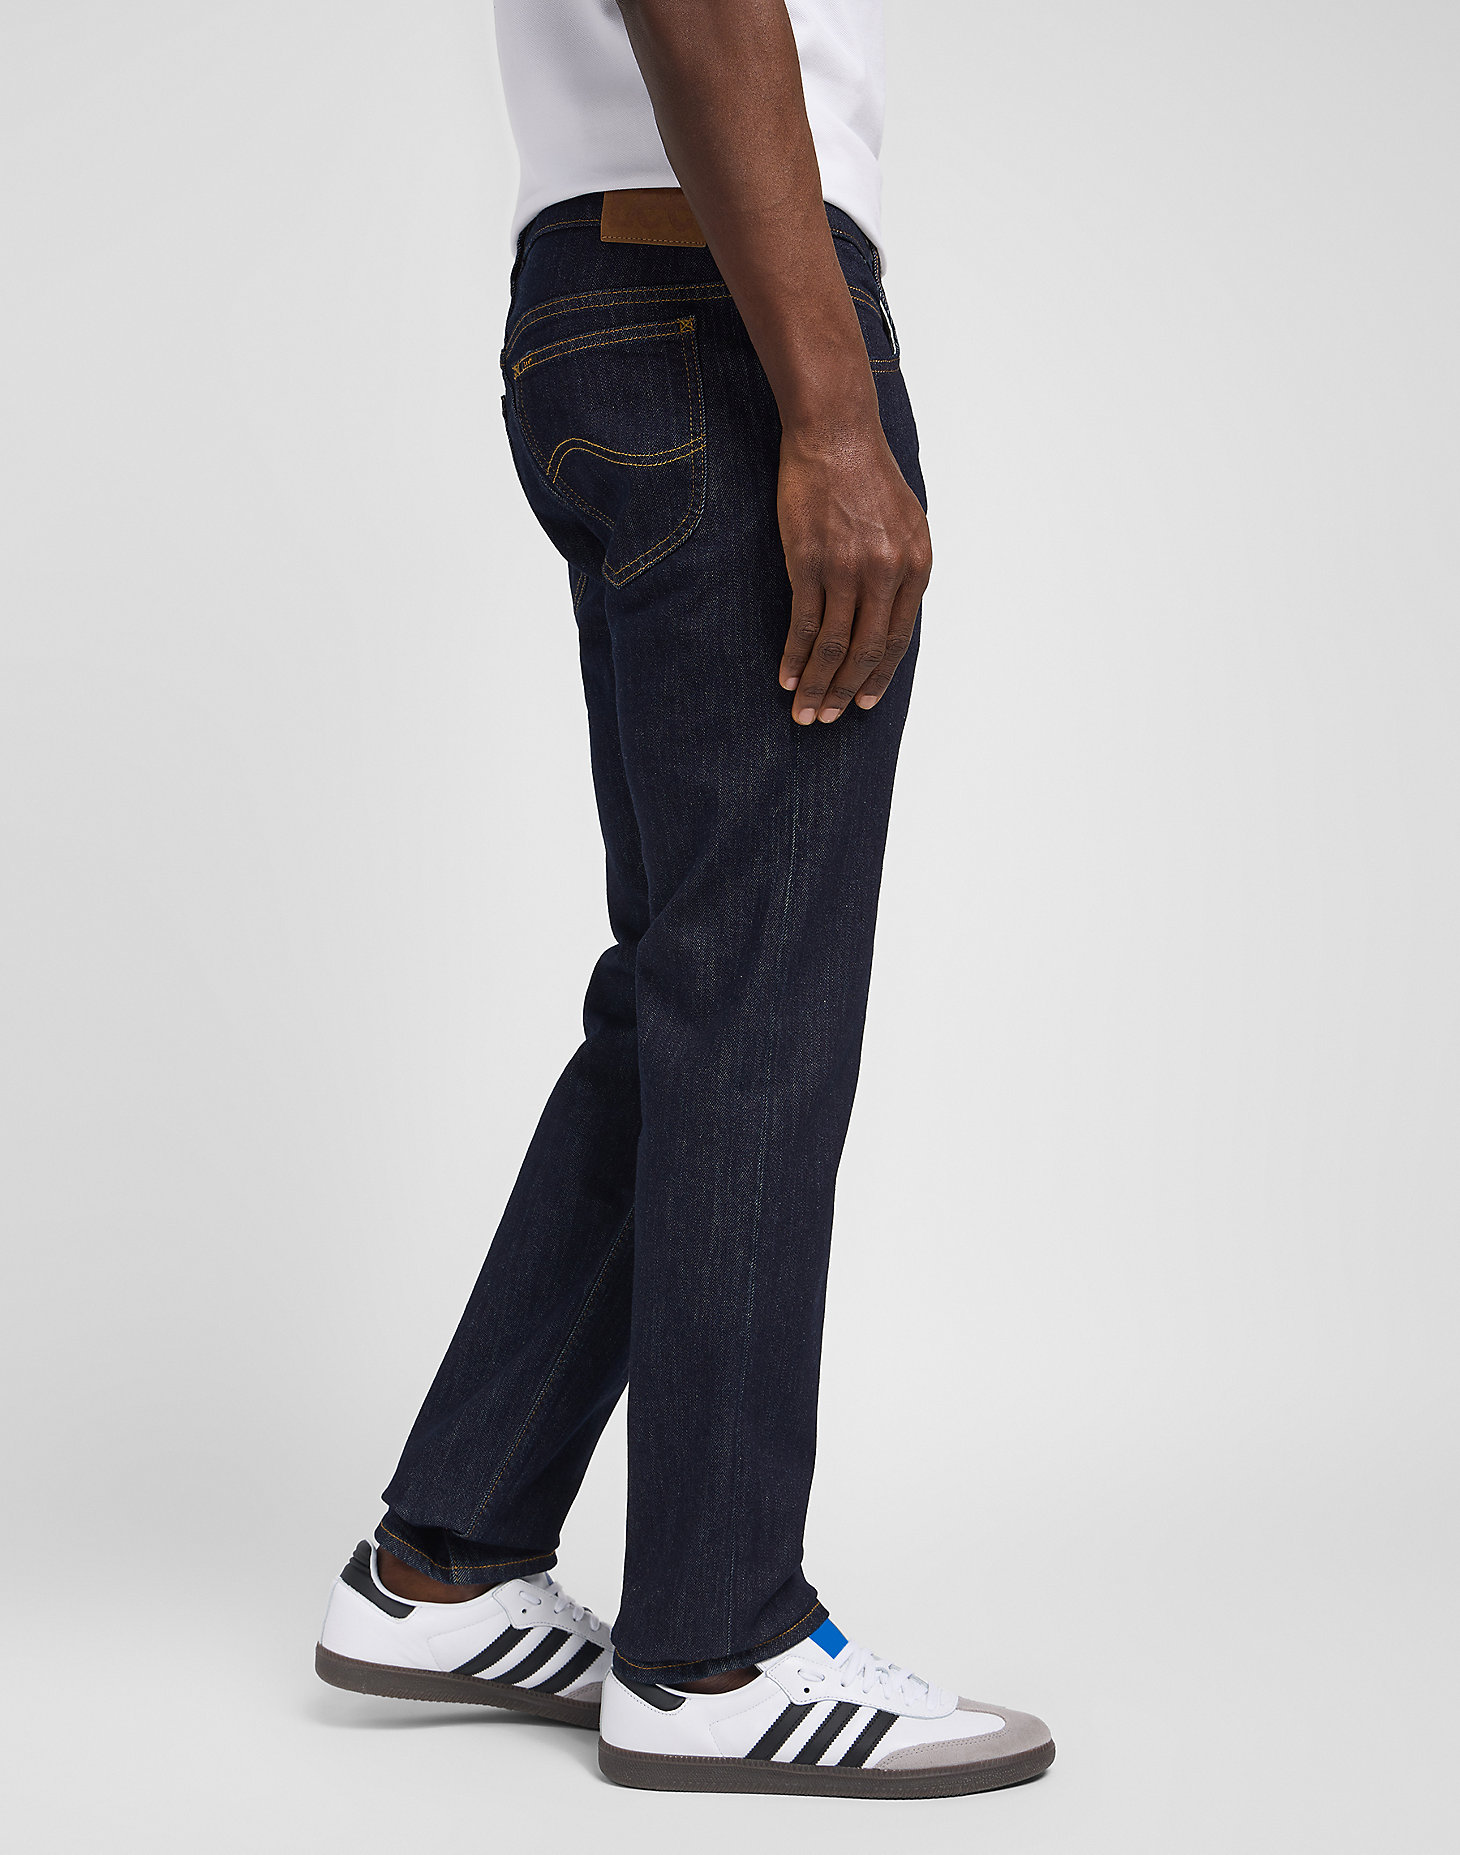 Uomo Jeans da Jeans Lee Jeans 31% di sconto Rider JeansLee Jeans in Denim da Uomo colore Grigio 